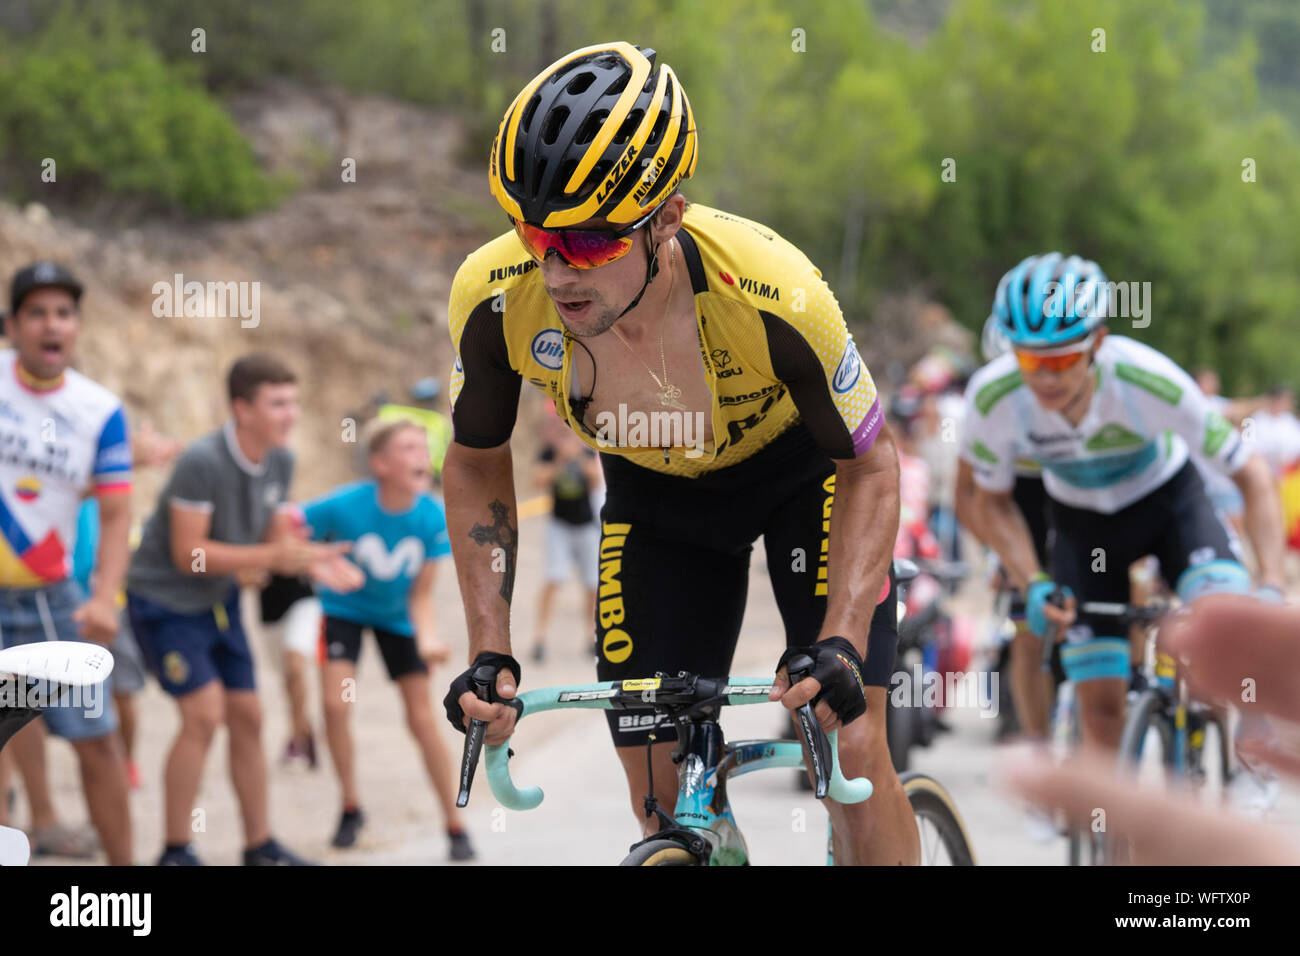 30 augustus 2019 Mas de la Costa, Spagna Ciclismo Vuelta 2019 30-08-2019: Ronde van Spanje: Onda: Mas de la Costa Jumbo Visma team, Primoz Roglic, fase 7, Vuelta a Espana 2019 Foto Stock